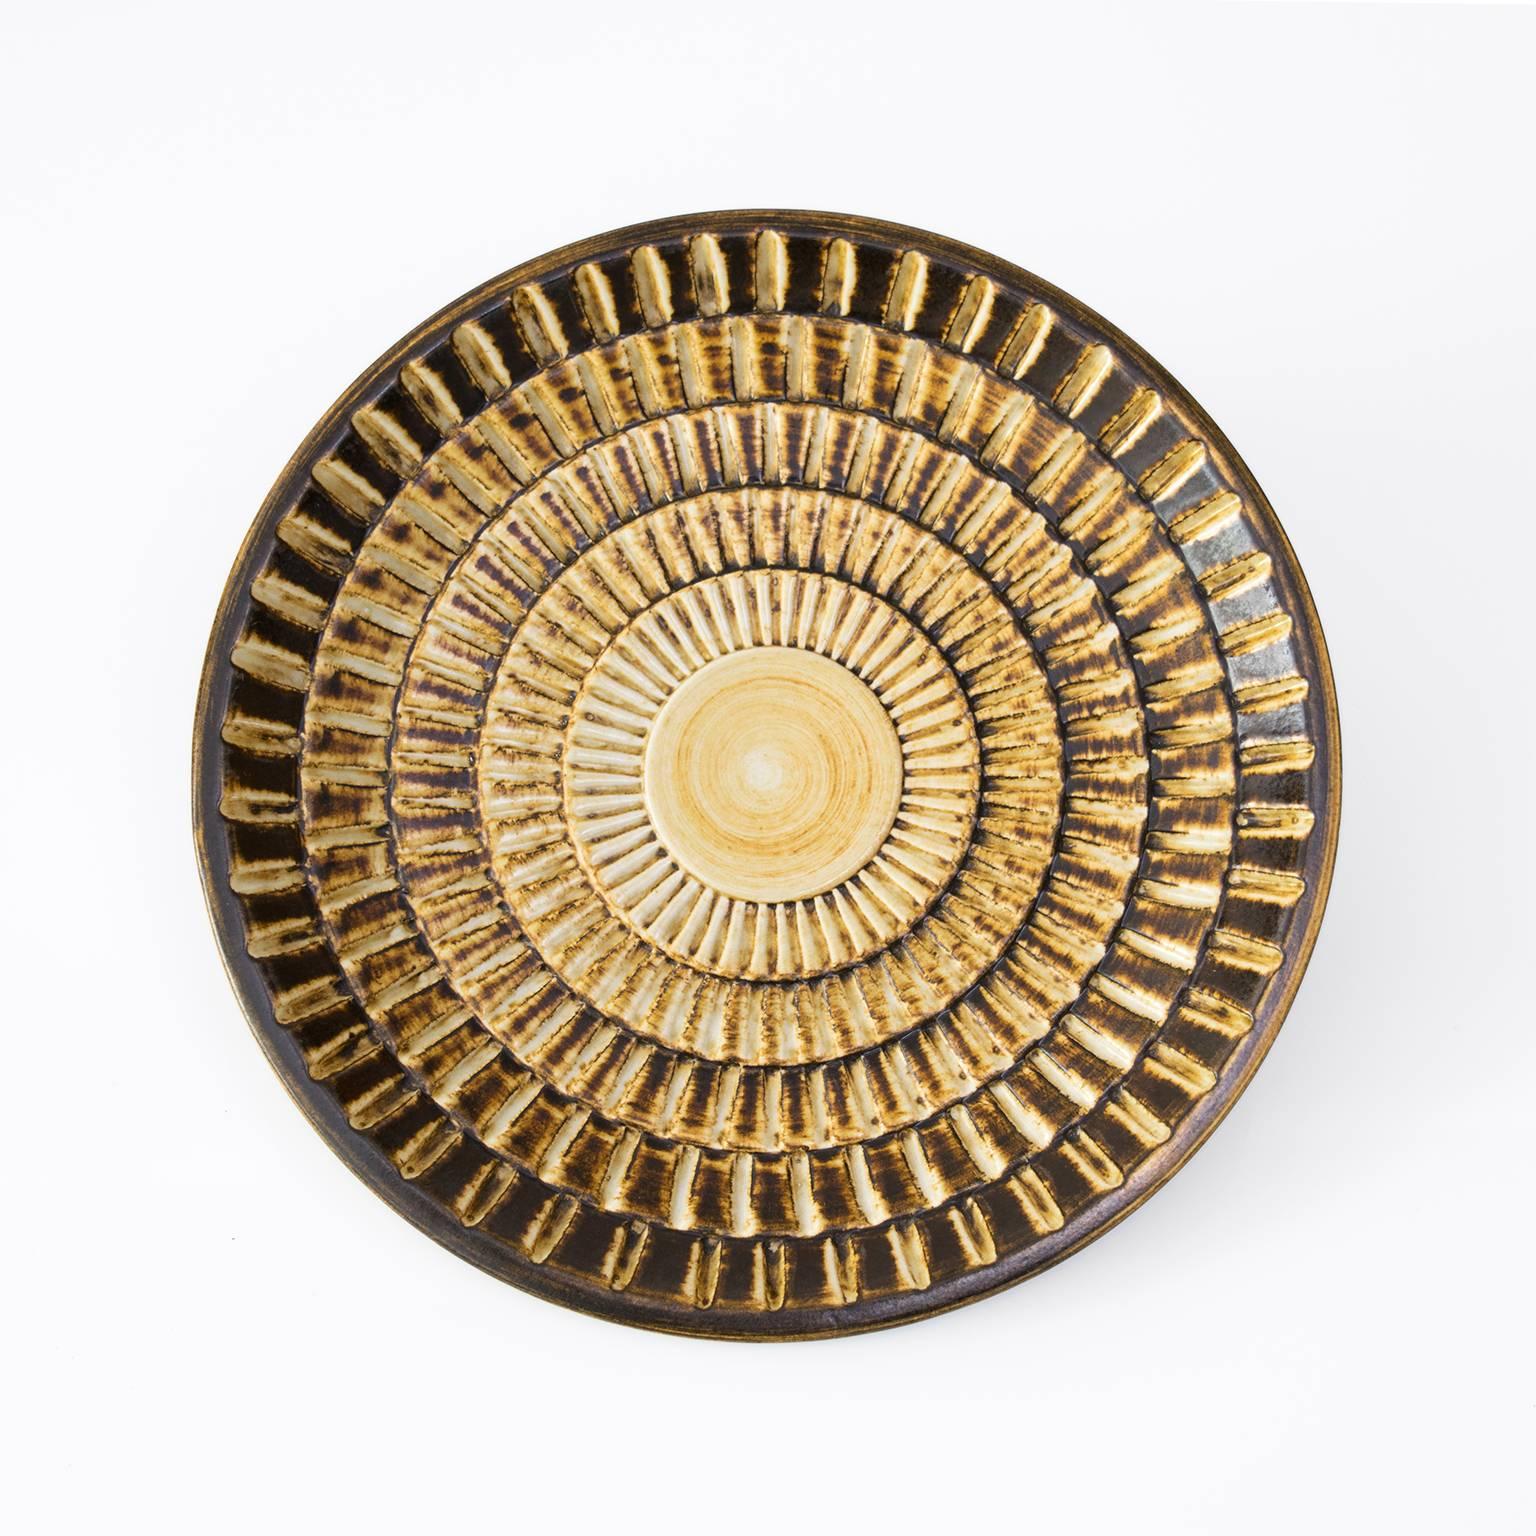 Scandinavian modern ceramic shallow bowl by Gertrud Lonegren in golden glaze and a highly textured surface. Diameter: 11.25